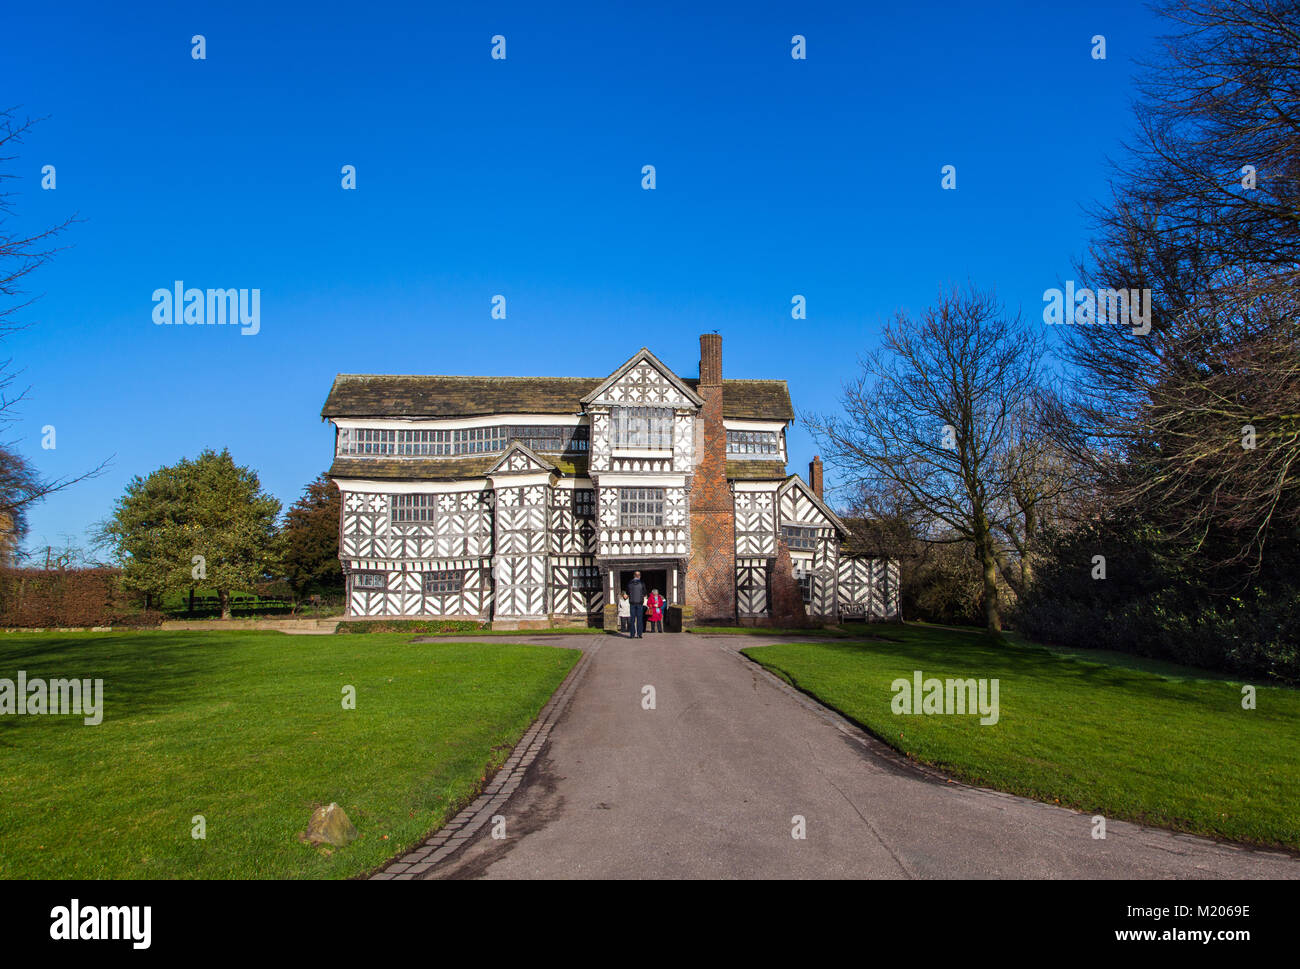 Petit hall de Moreton, noir et blanc à colombages de style Tudor Manor House près de Crewe dans le Cheshire, construit dans les années 1500, maintenant la propriété du National Trust Banque D'Images